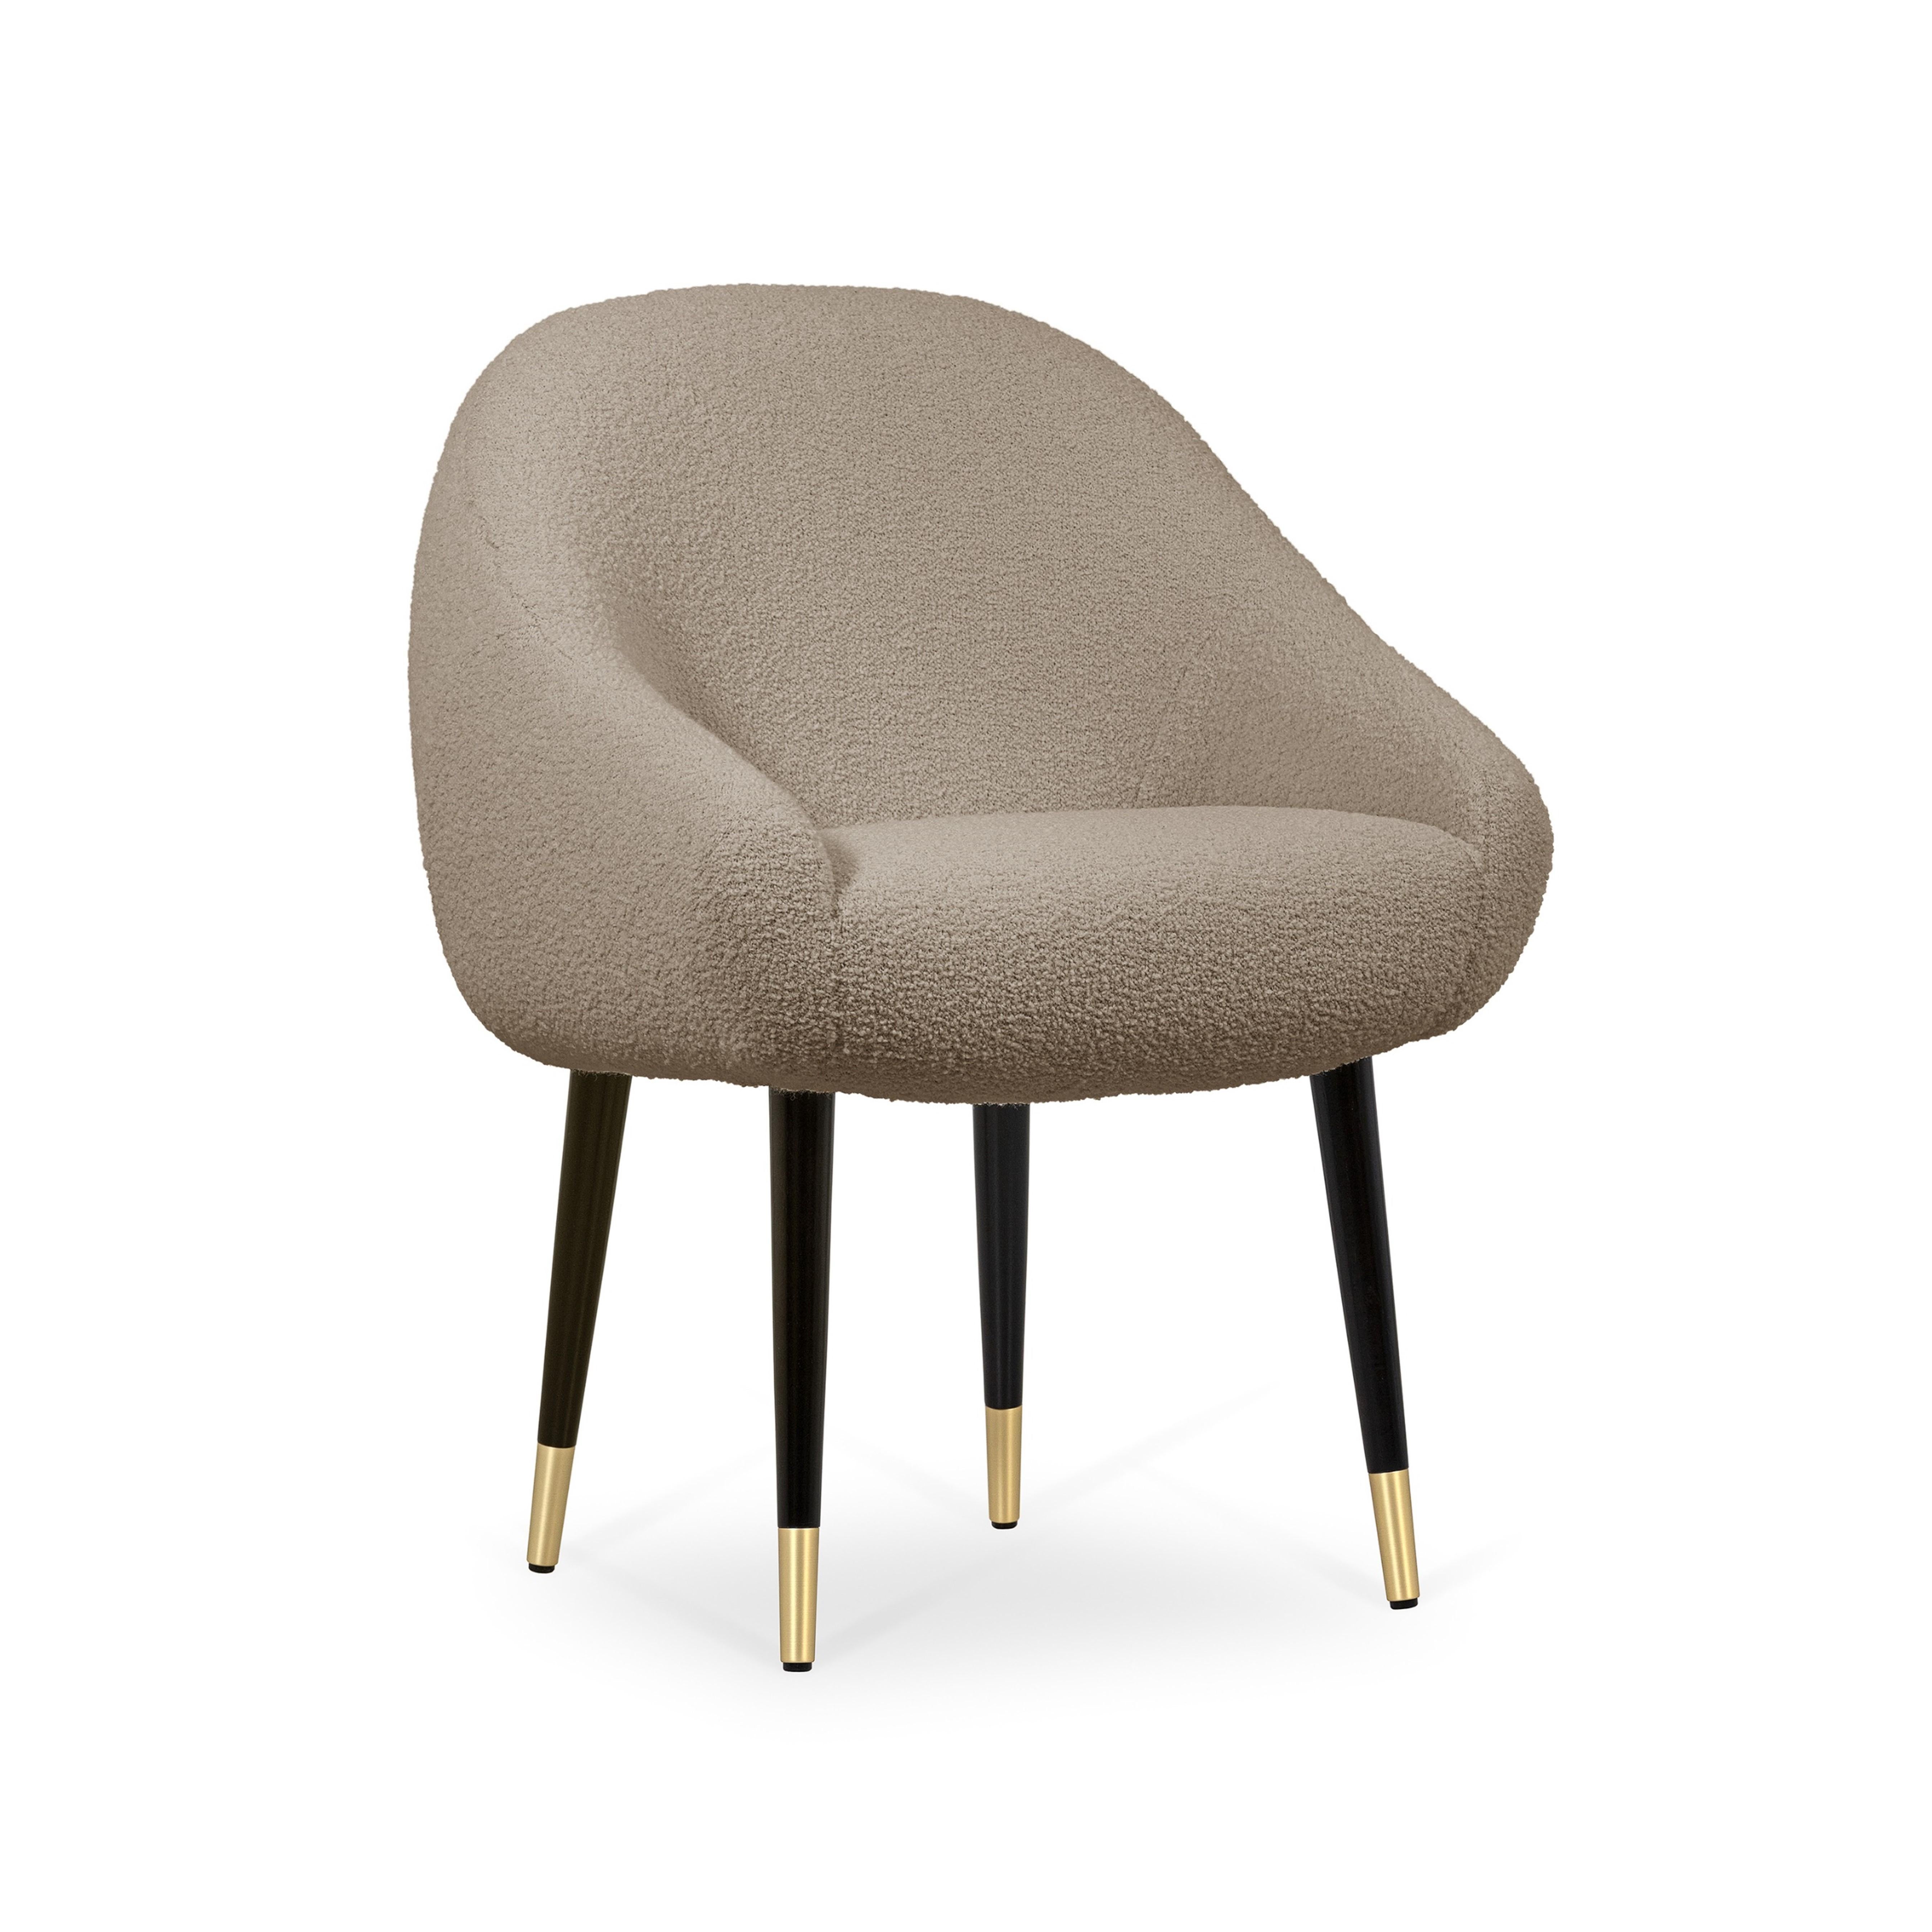 La chaise de salle à manger Niemeyer porte le nom de l'architecte brésilien Oscar Niemeyer, dont l'architecture s'est répandue comme une poésie sculpturale dans l'histoire de l'humanité. Les lignes arrondies de la chaise sont influencées par la